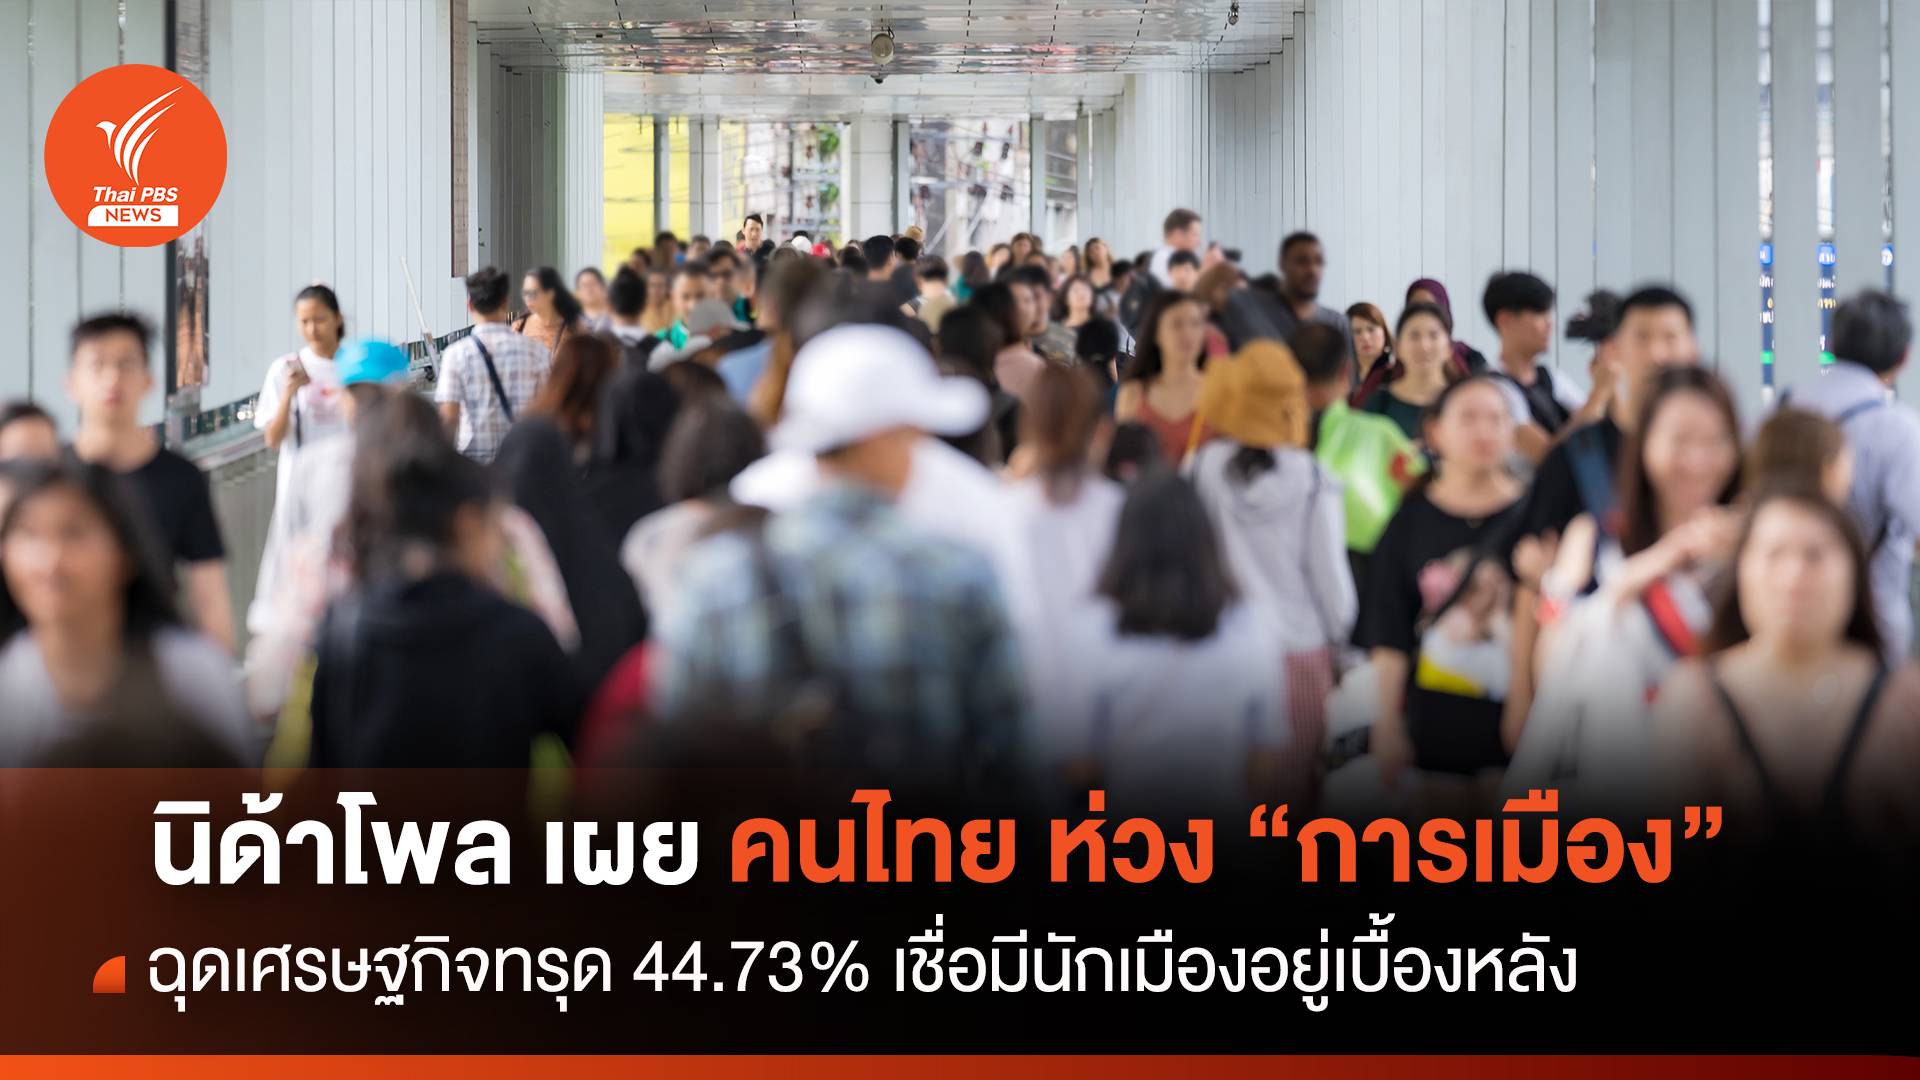 "นิด้าโพล" เผยคนไทยห่วง “การเมือง” ฉุดเศรษฐกิจทรุด